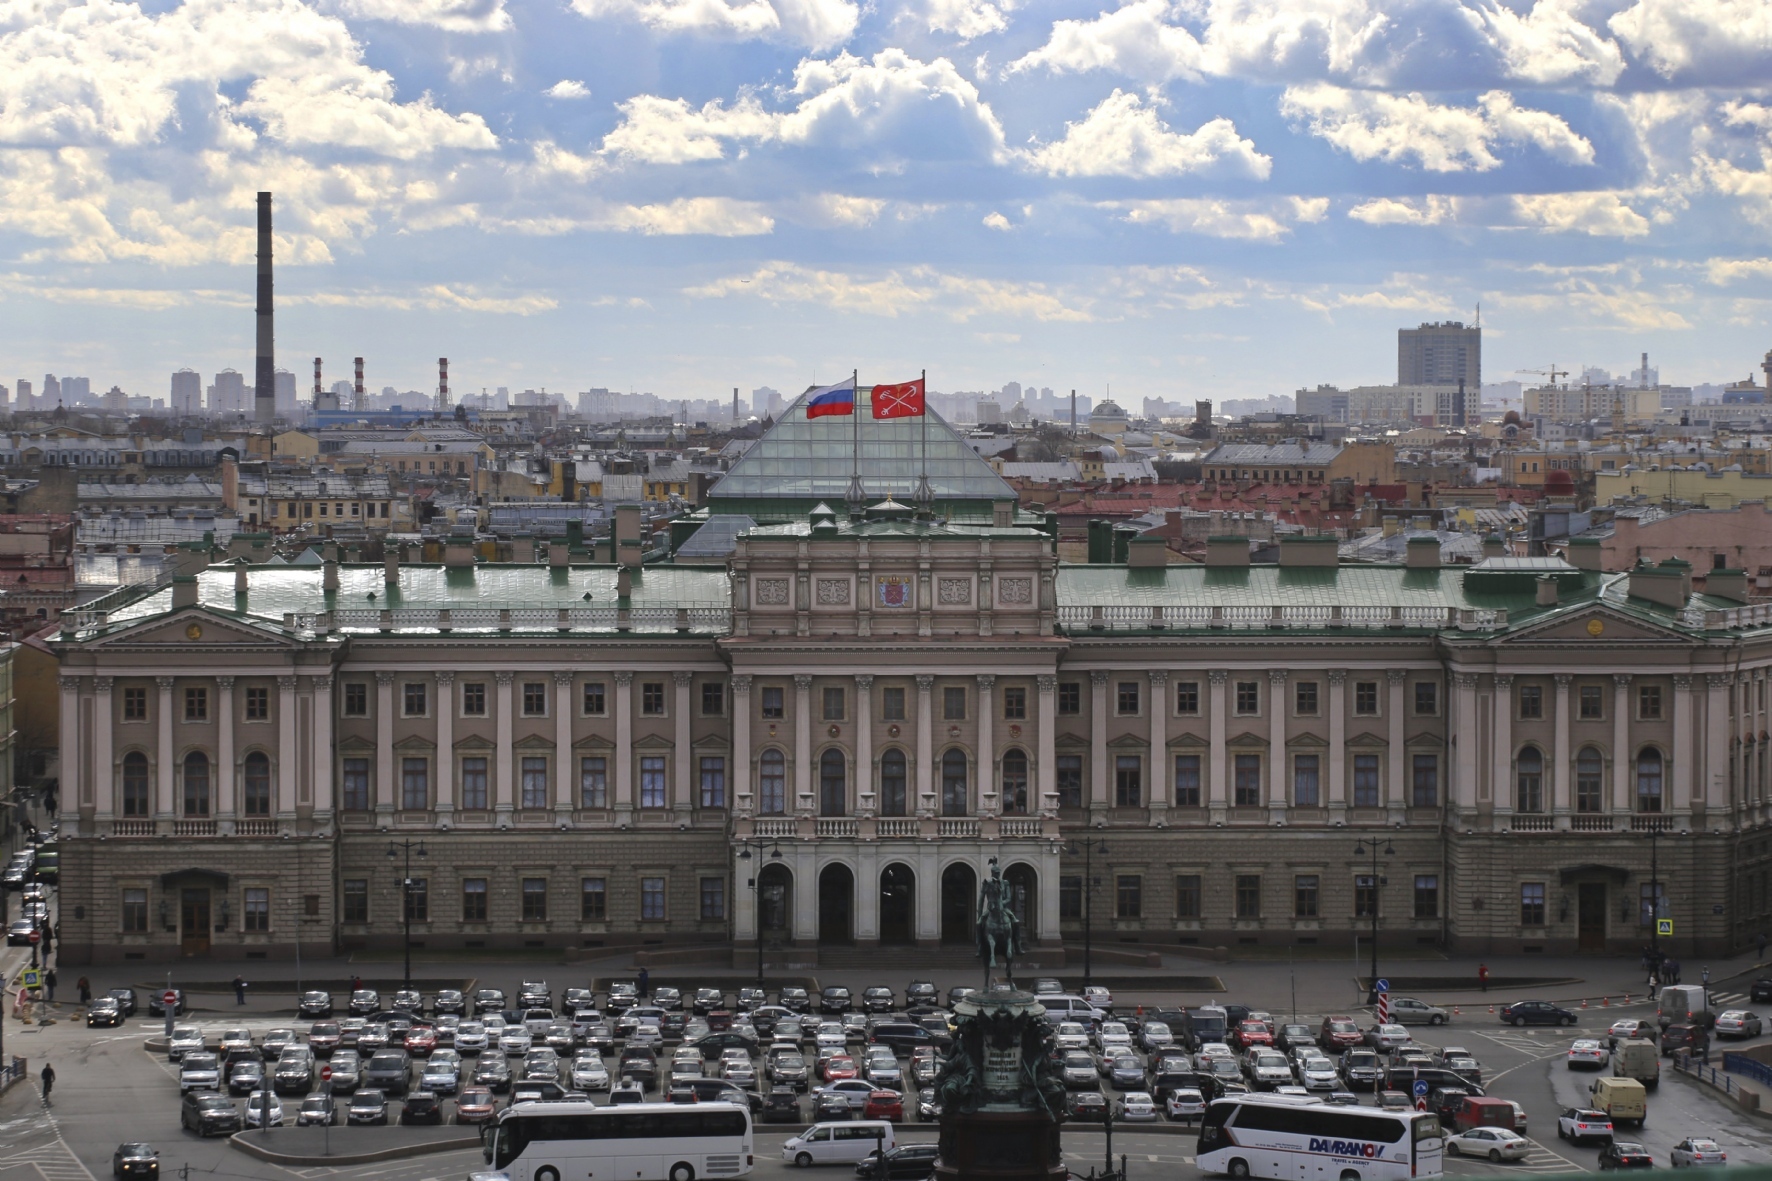 Законодательное собрание Санкт-Петербурга (Мариинский дворец)